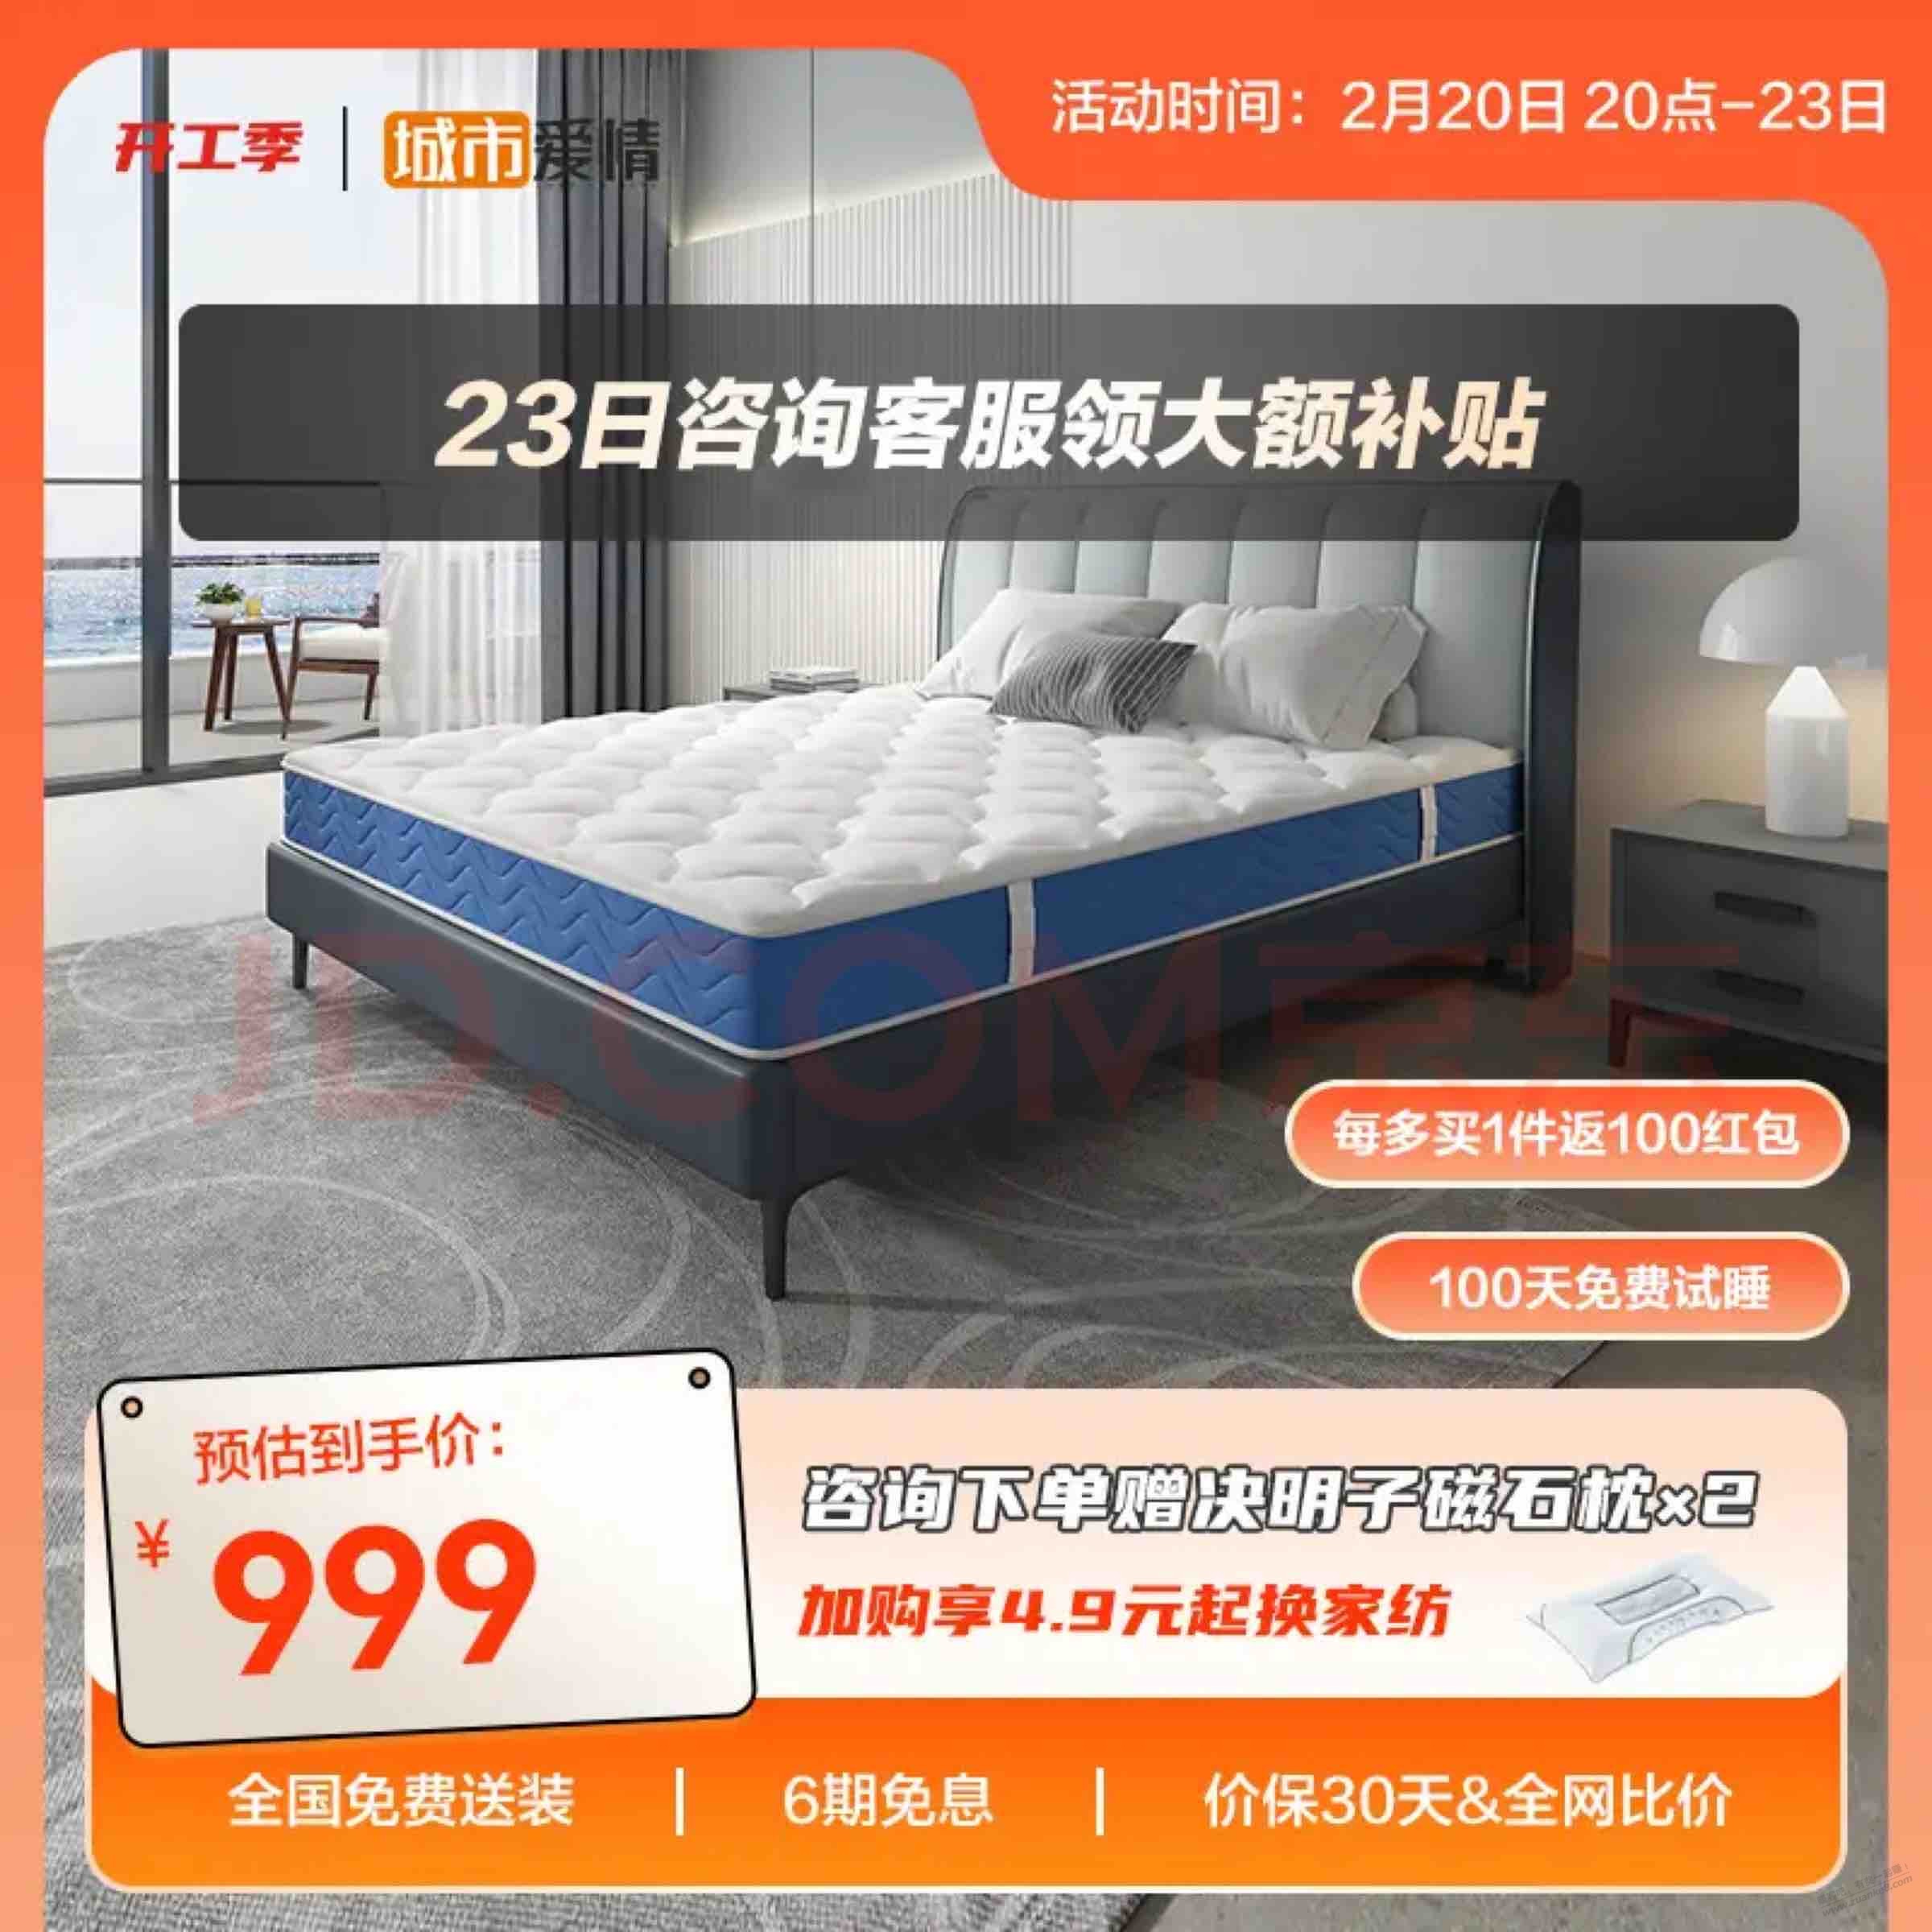 床垫好价759